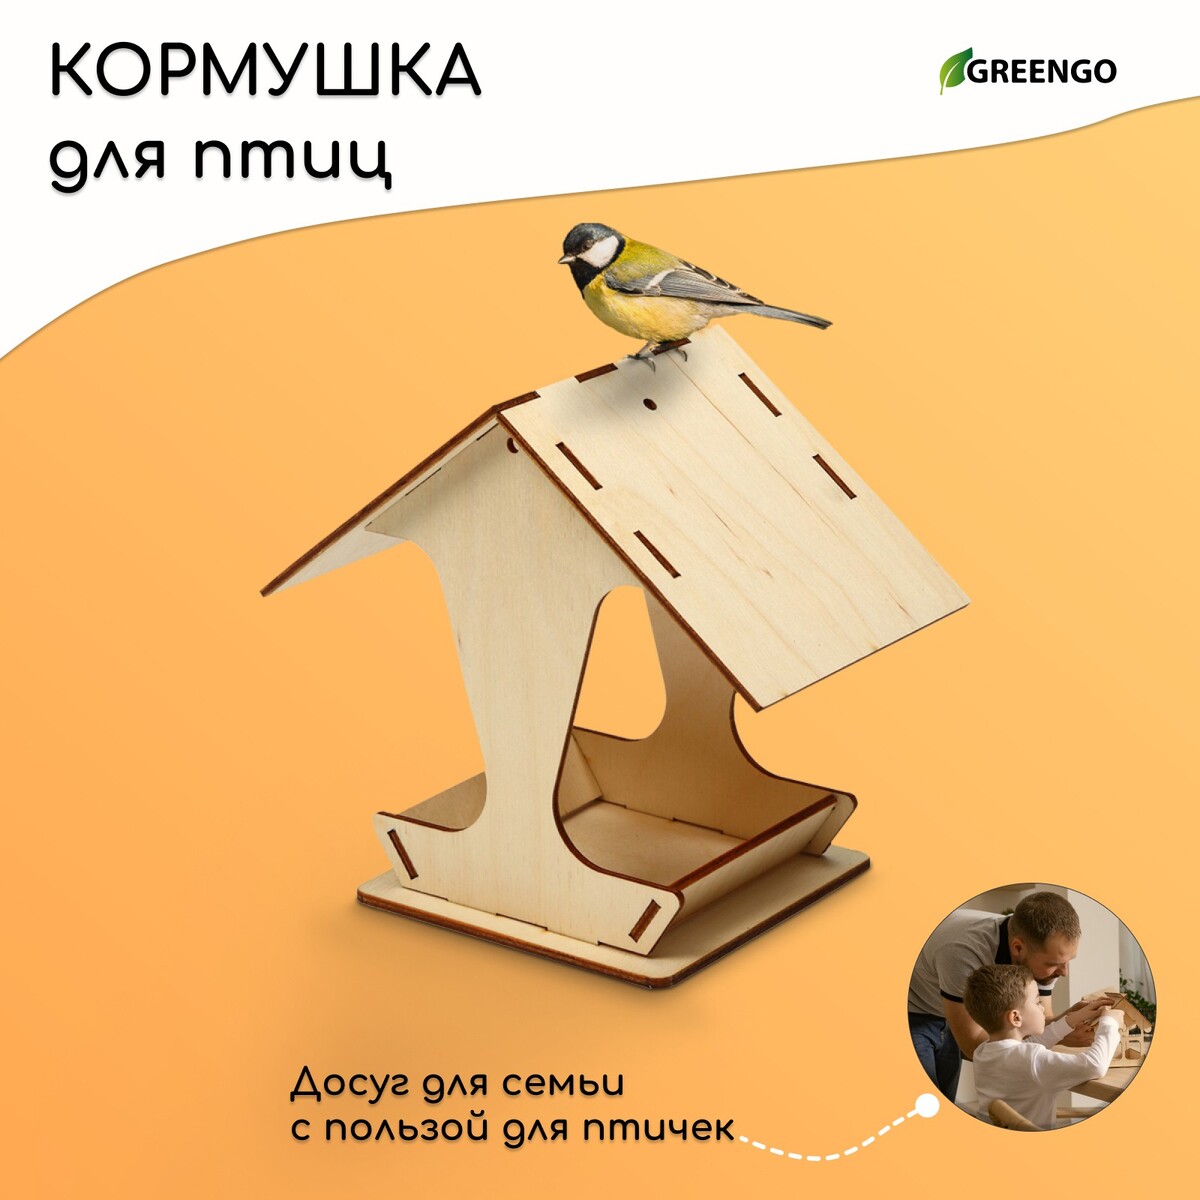 Kopмушка для птиц, 17 × 10,5 × 15,5 см, greengo kopмушка для птиц 22 × 17 × 17 см разобранная